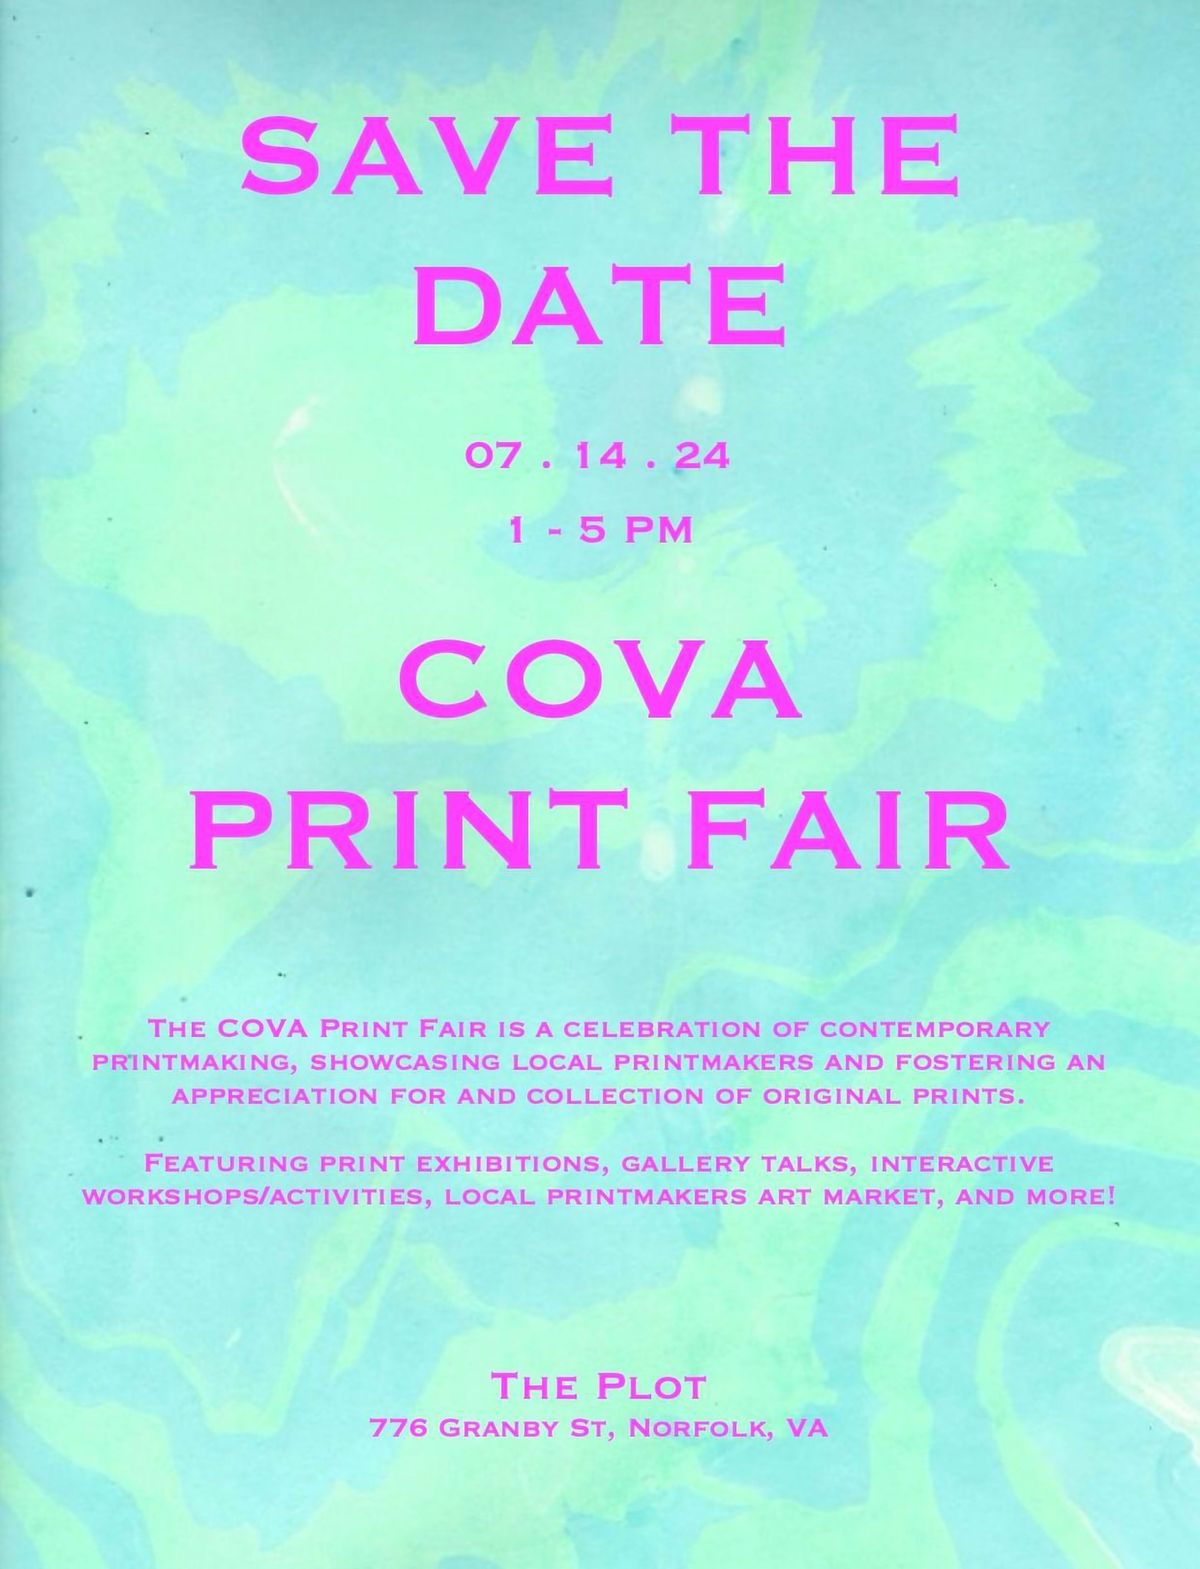 COVA Print Fair